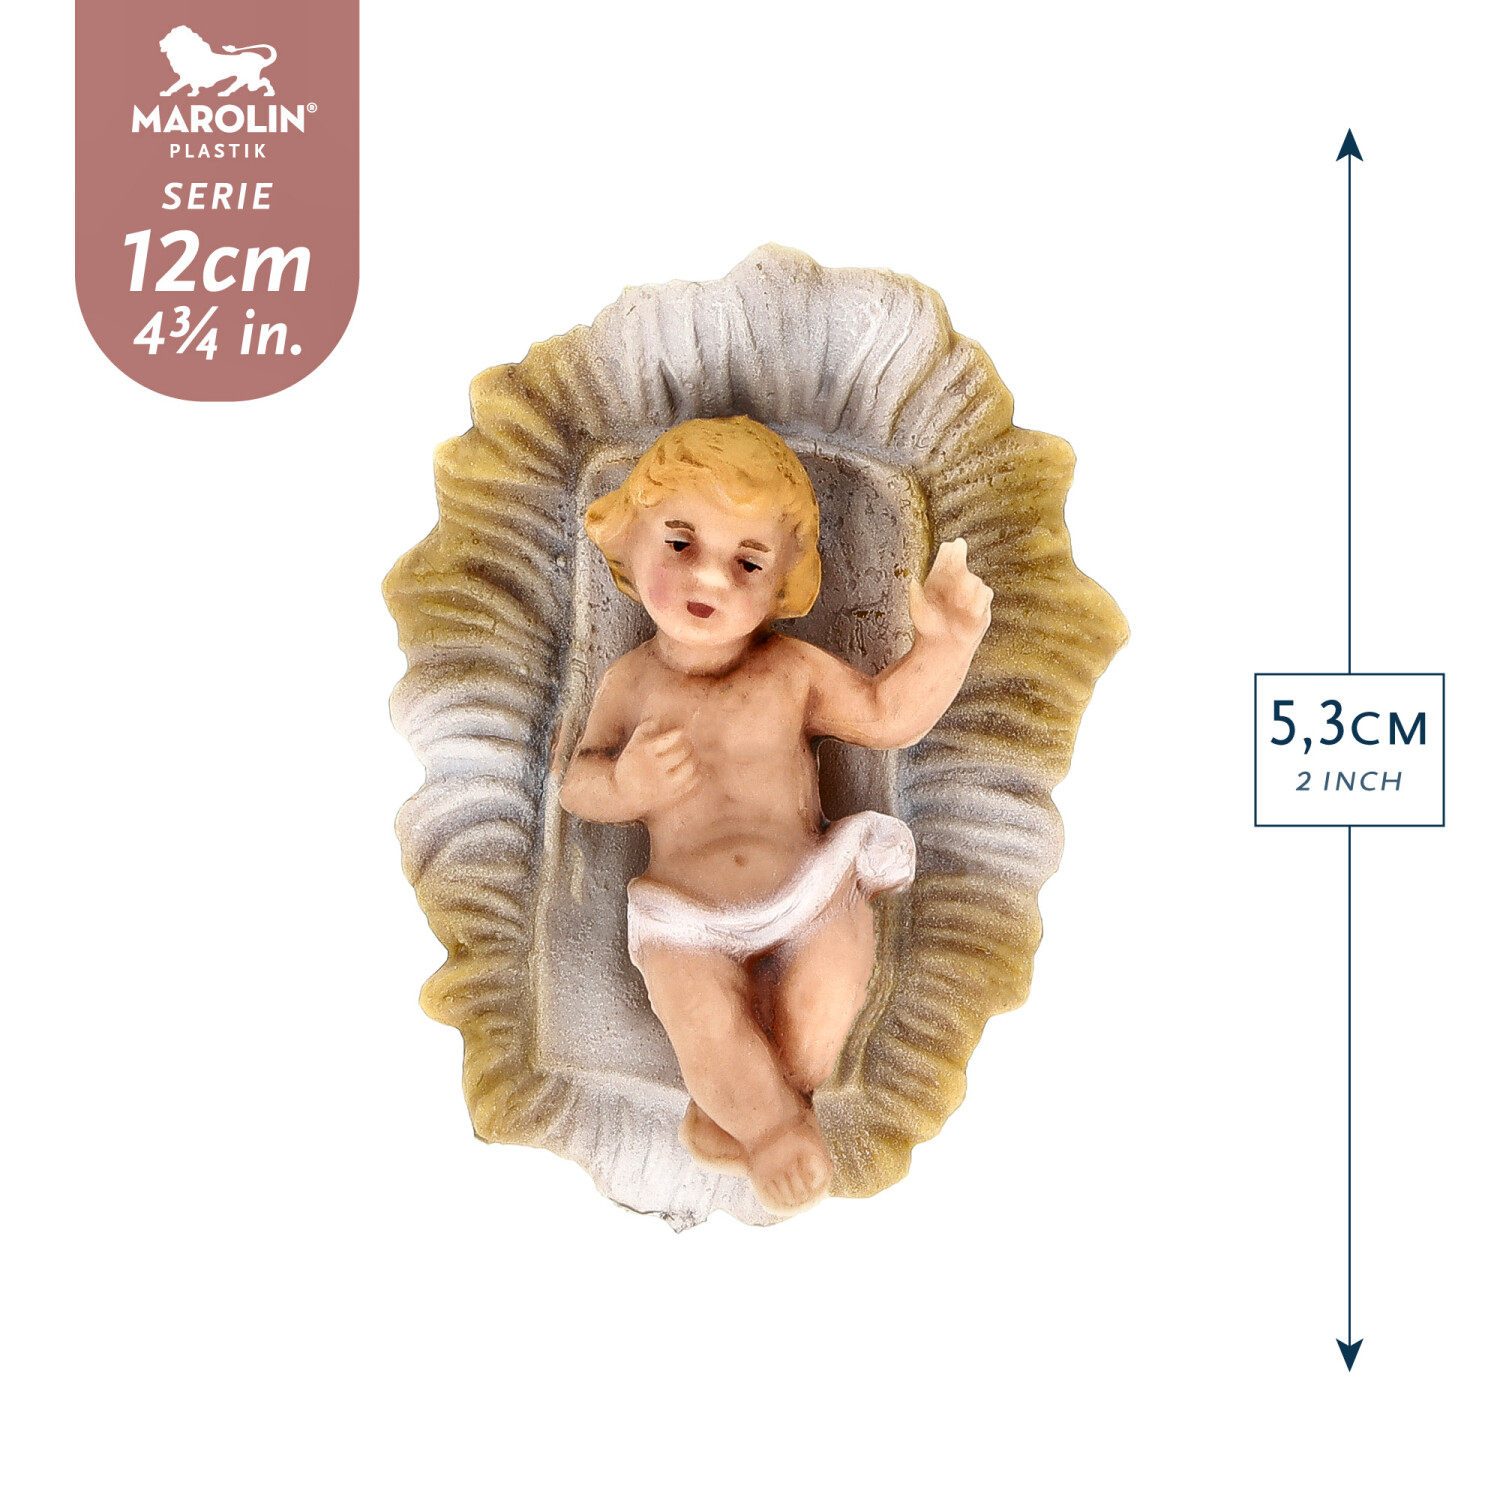 Infant Jesus in crib - Marolin Plastik - Resin Nativity figure - made in Germany